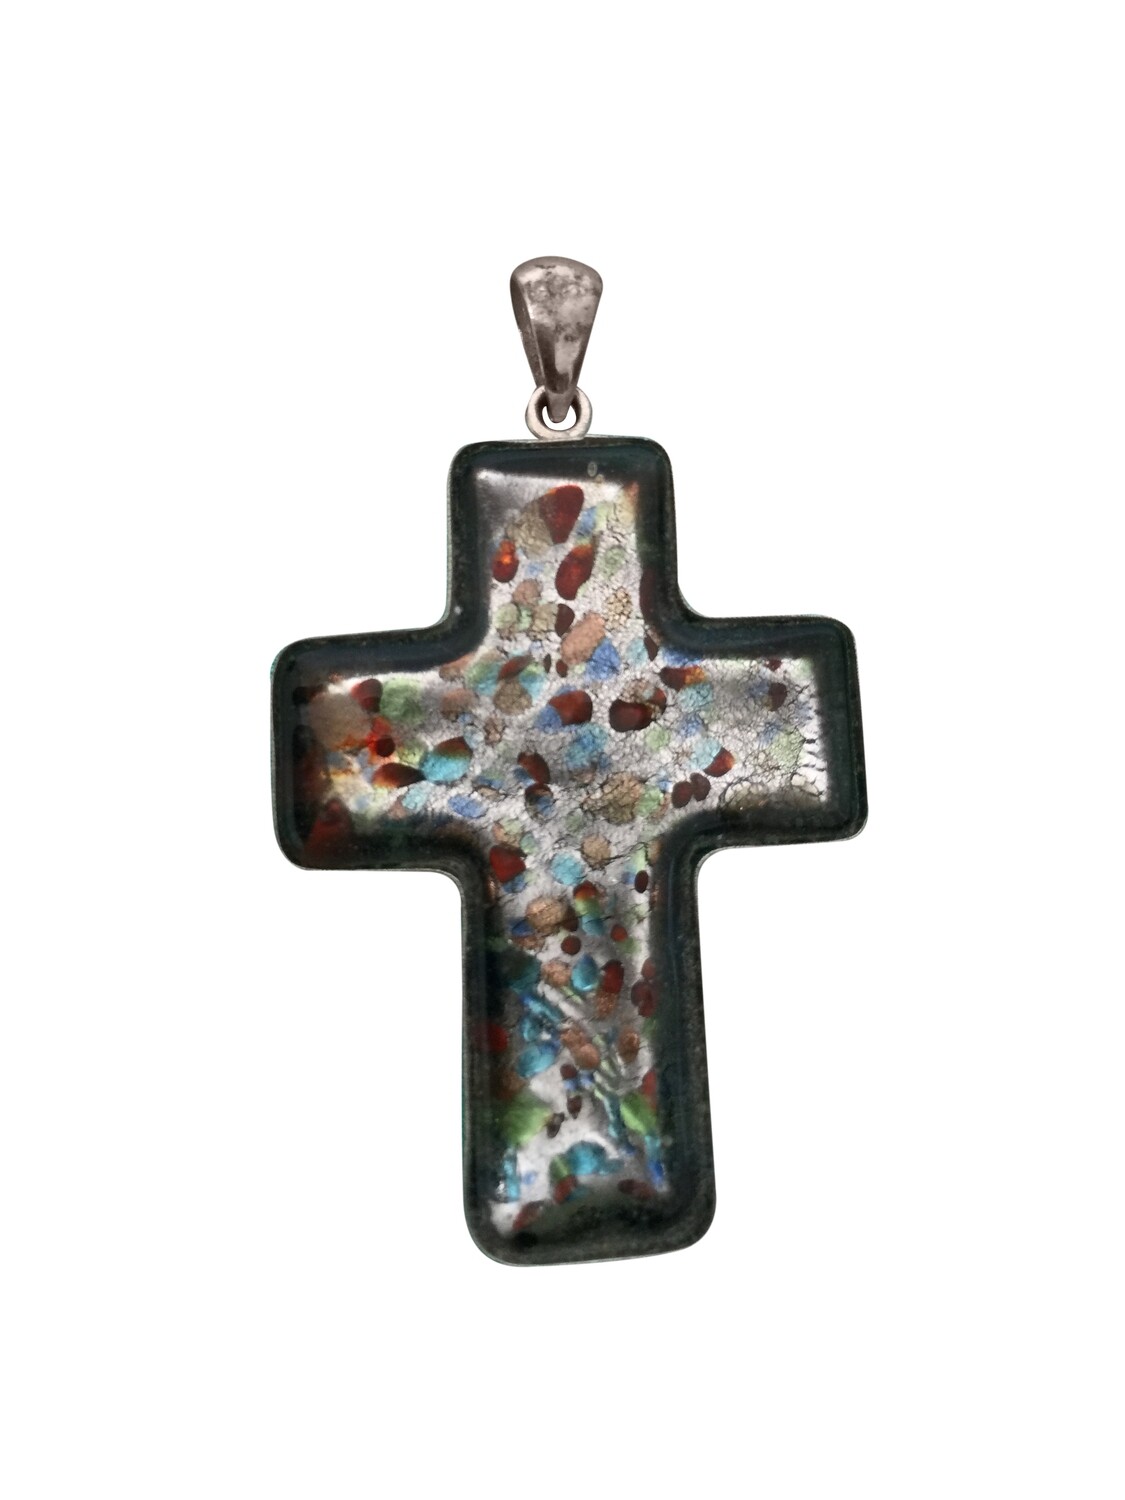 Murano glass cross pendant